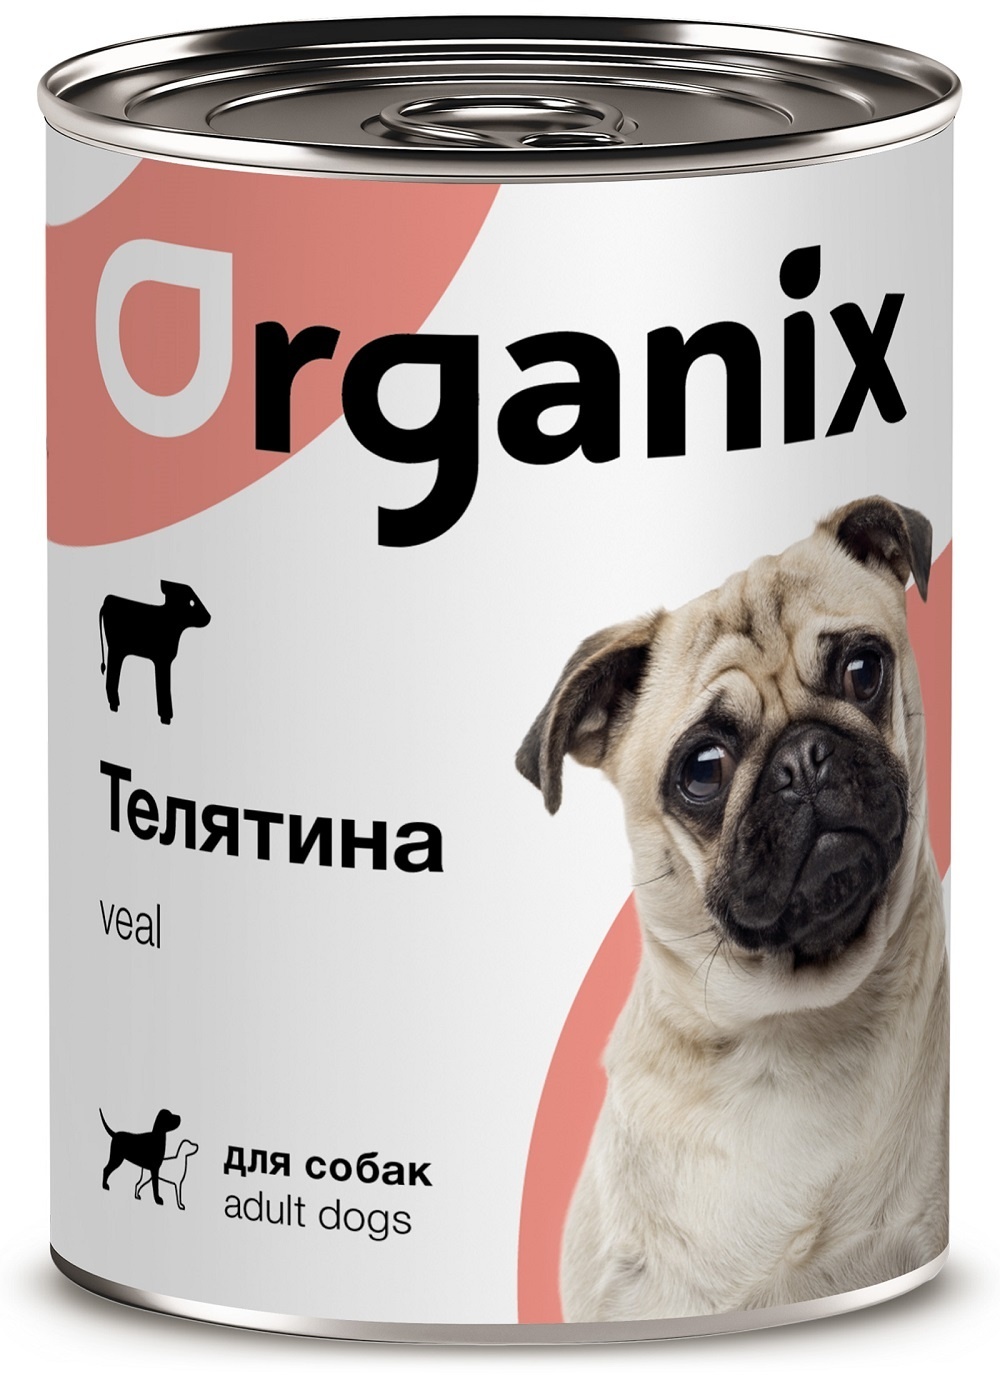 Organix консервы Organix консервы с телятиной для собак (100 г) organix консервы organix консервы для собак индейка с овощным ассорти 100 г